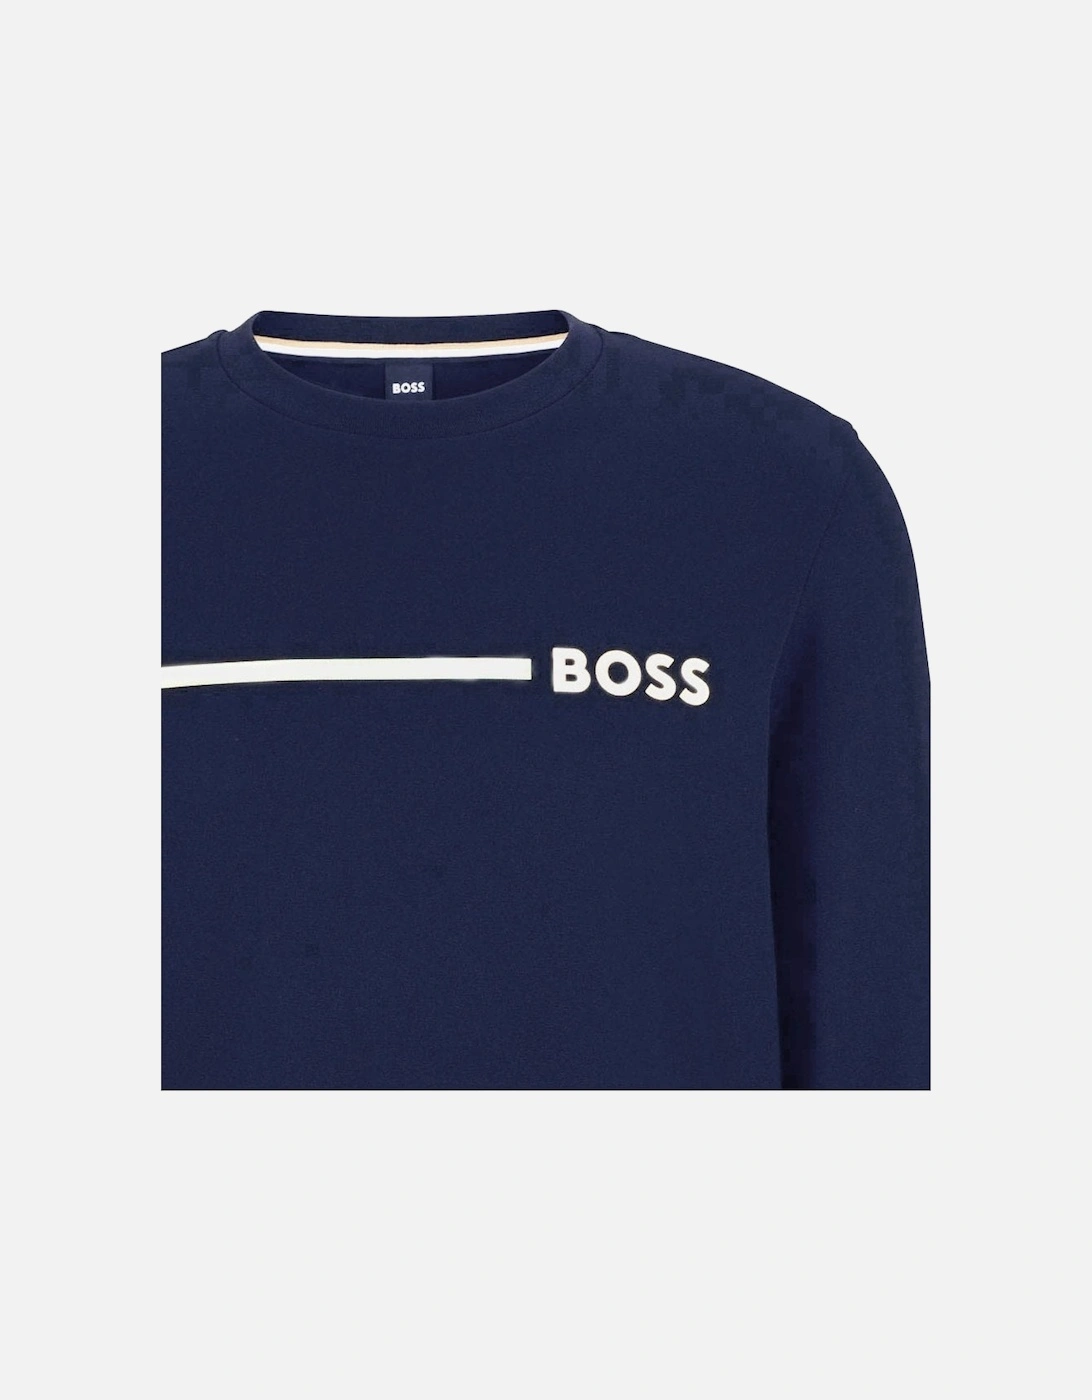 Men's Dark Blue Sweatshirt With Silver Logo.